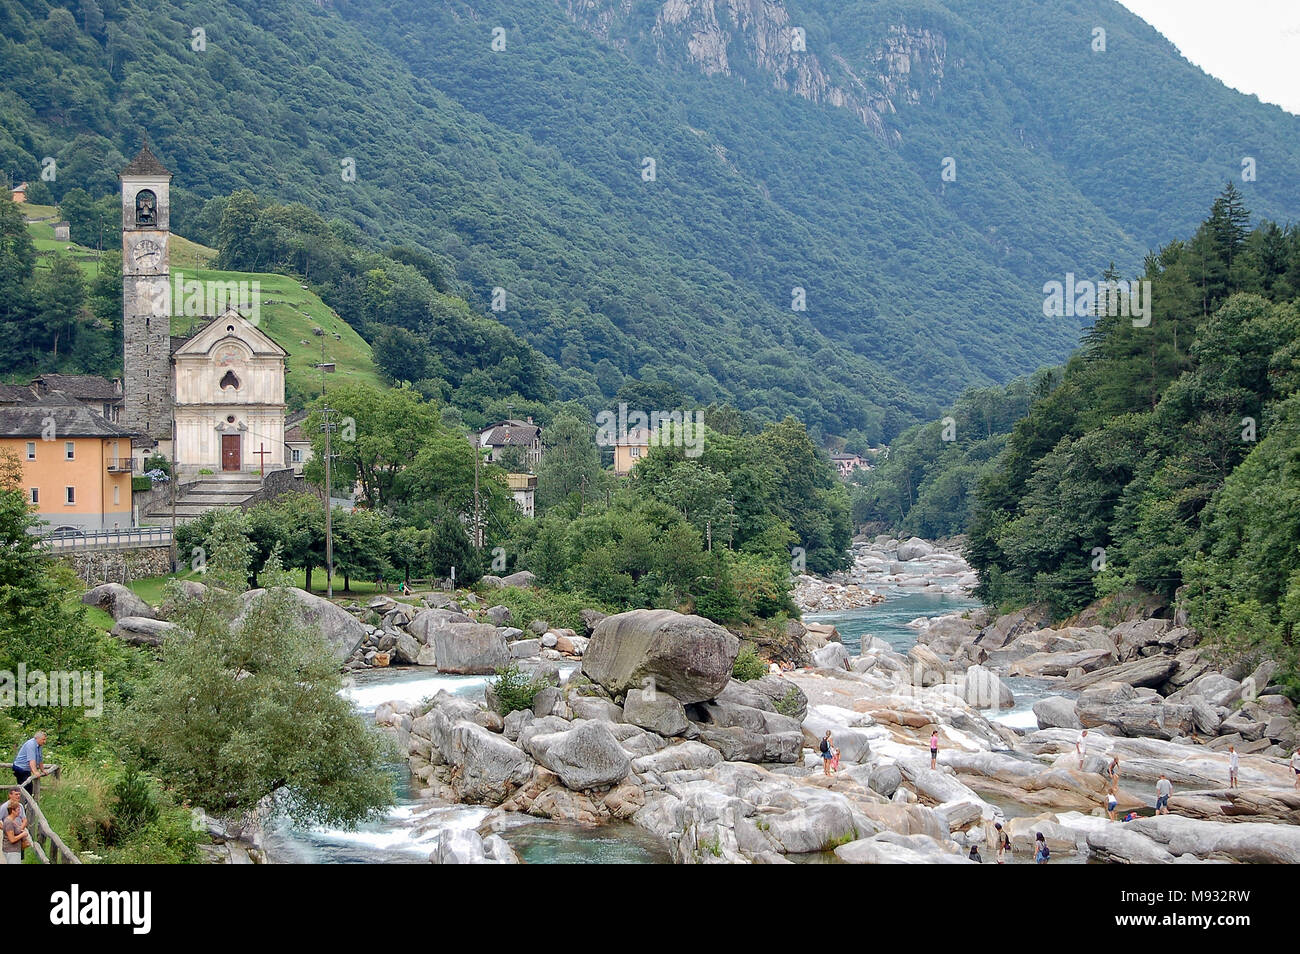 Turisti tra levigata liscia di rocce e massi nel fiume Verzasca (Fluss) - Lavertezzo, in Val Verzasca, Svizzera Foto Stock